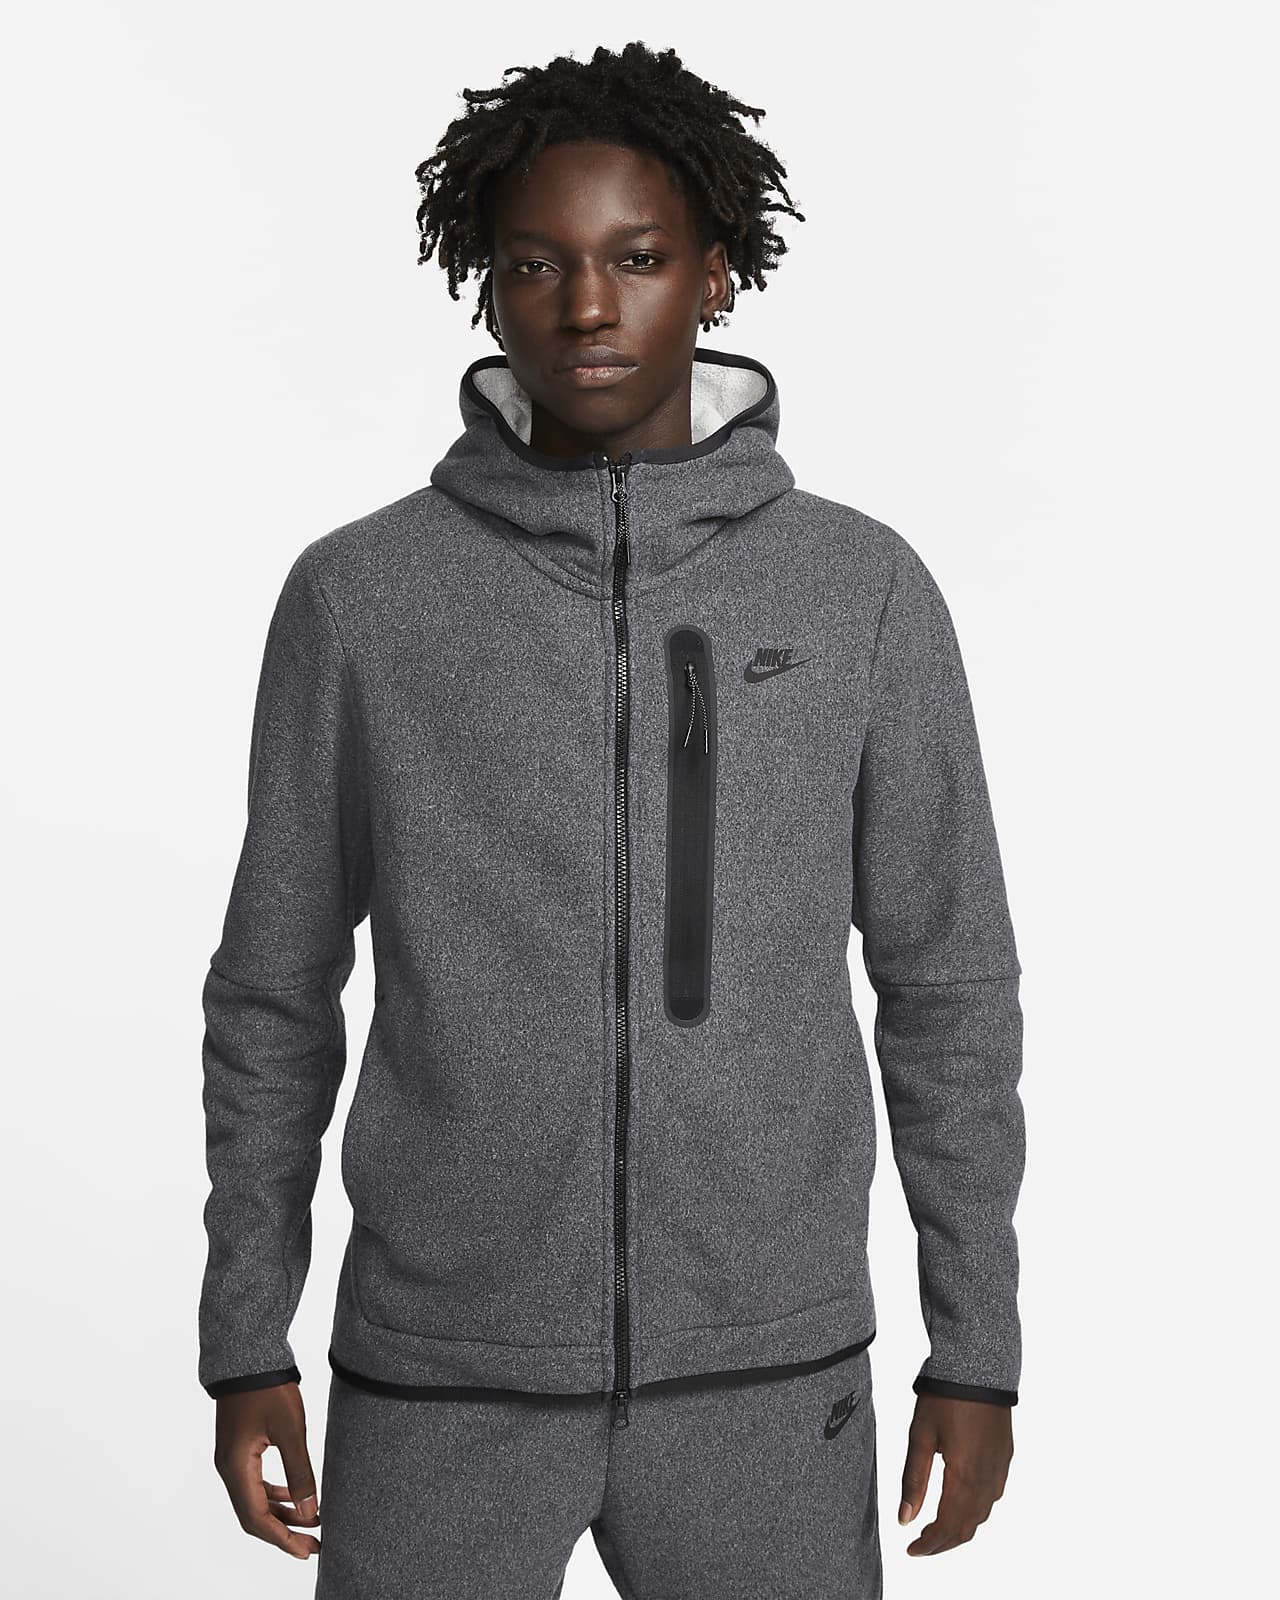 beloning extract wet Nike Sportswear Tech Fleece Winterse hoodie met rits voor heren. Nike NL